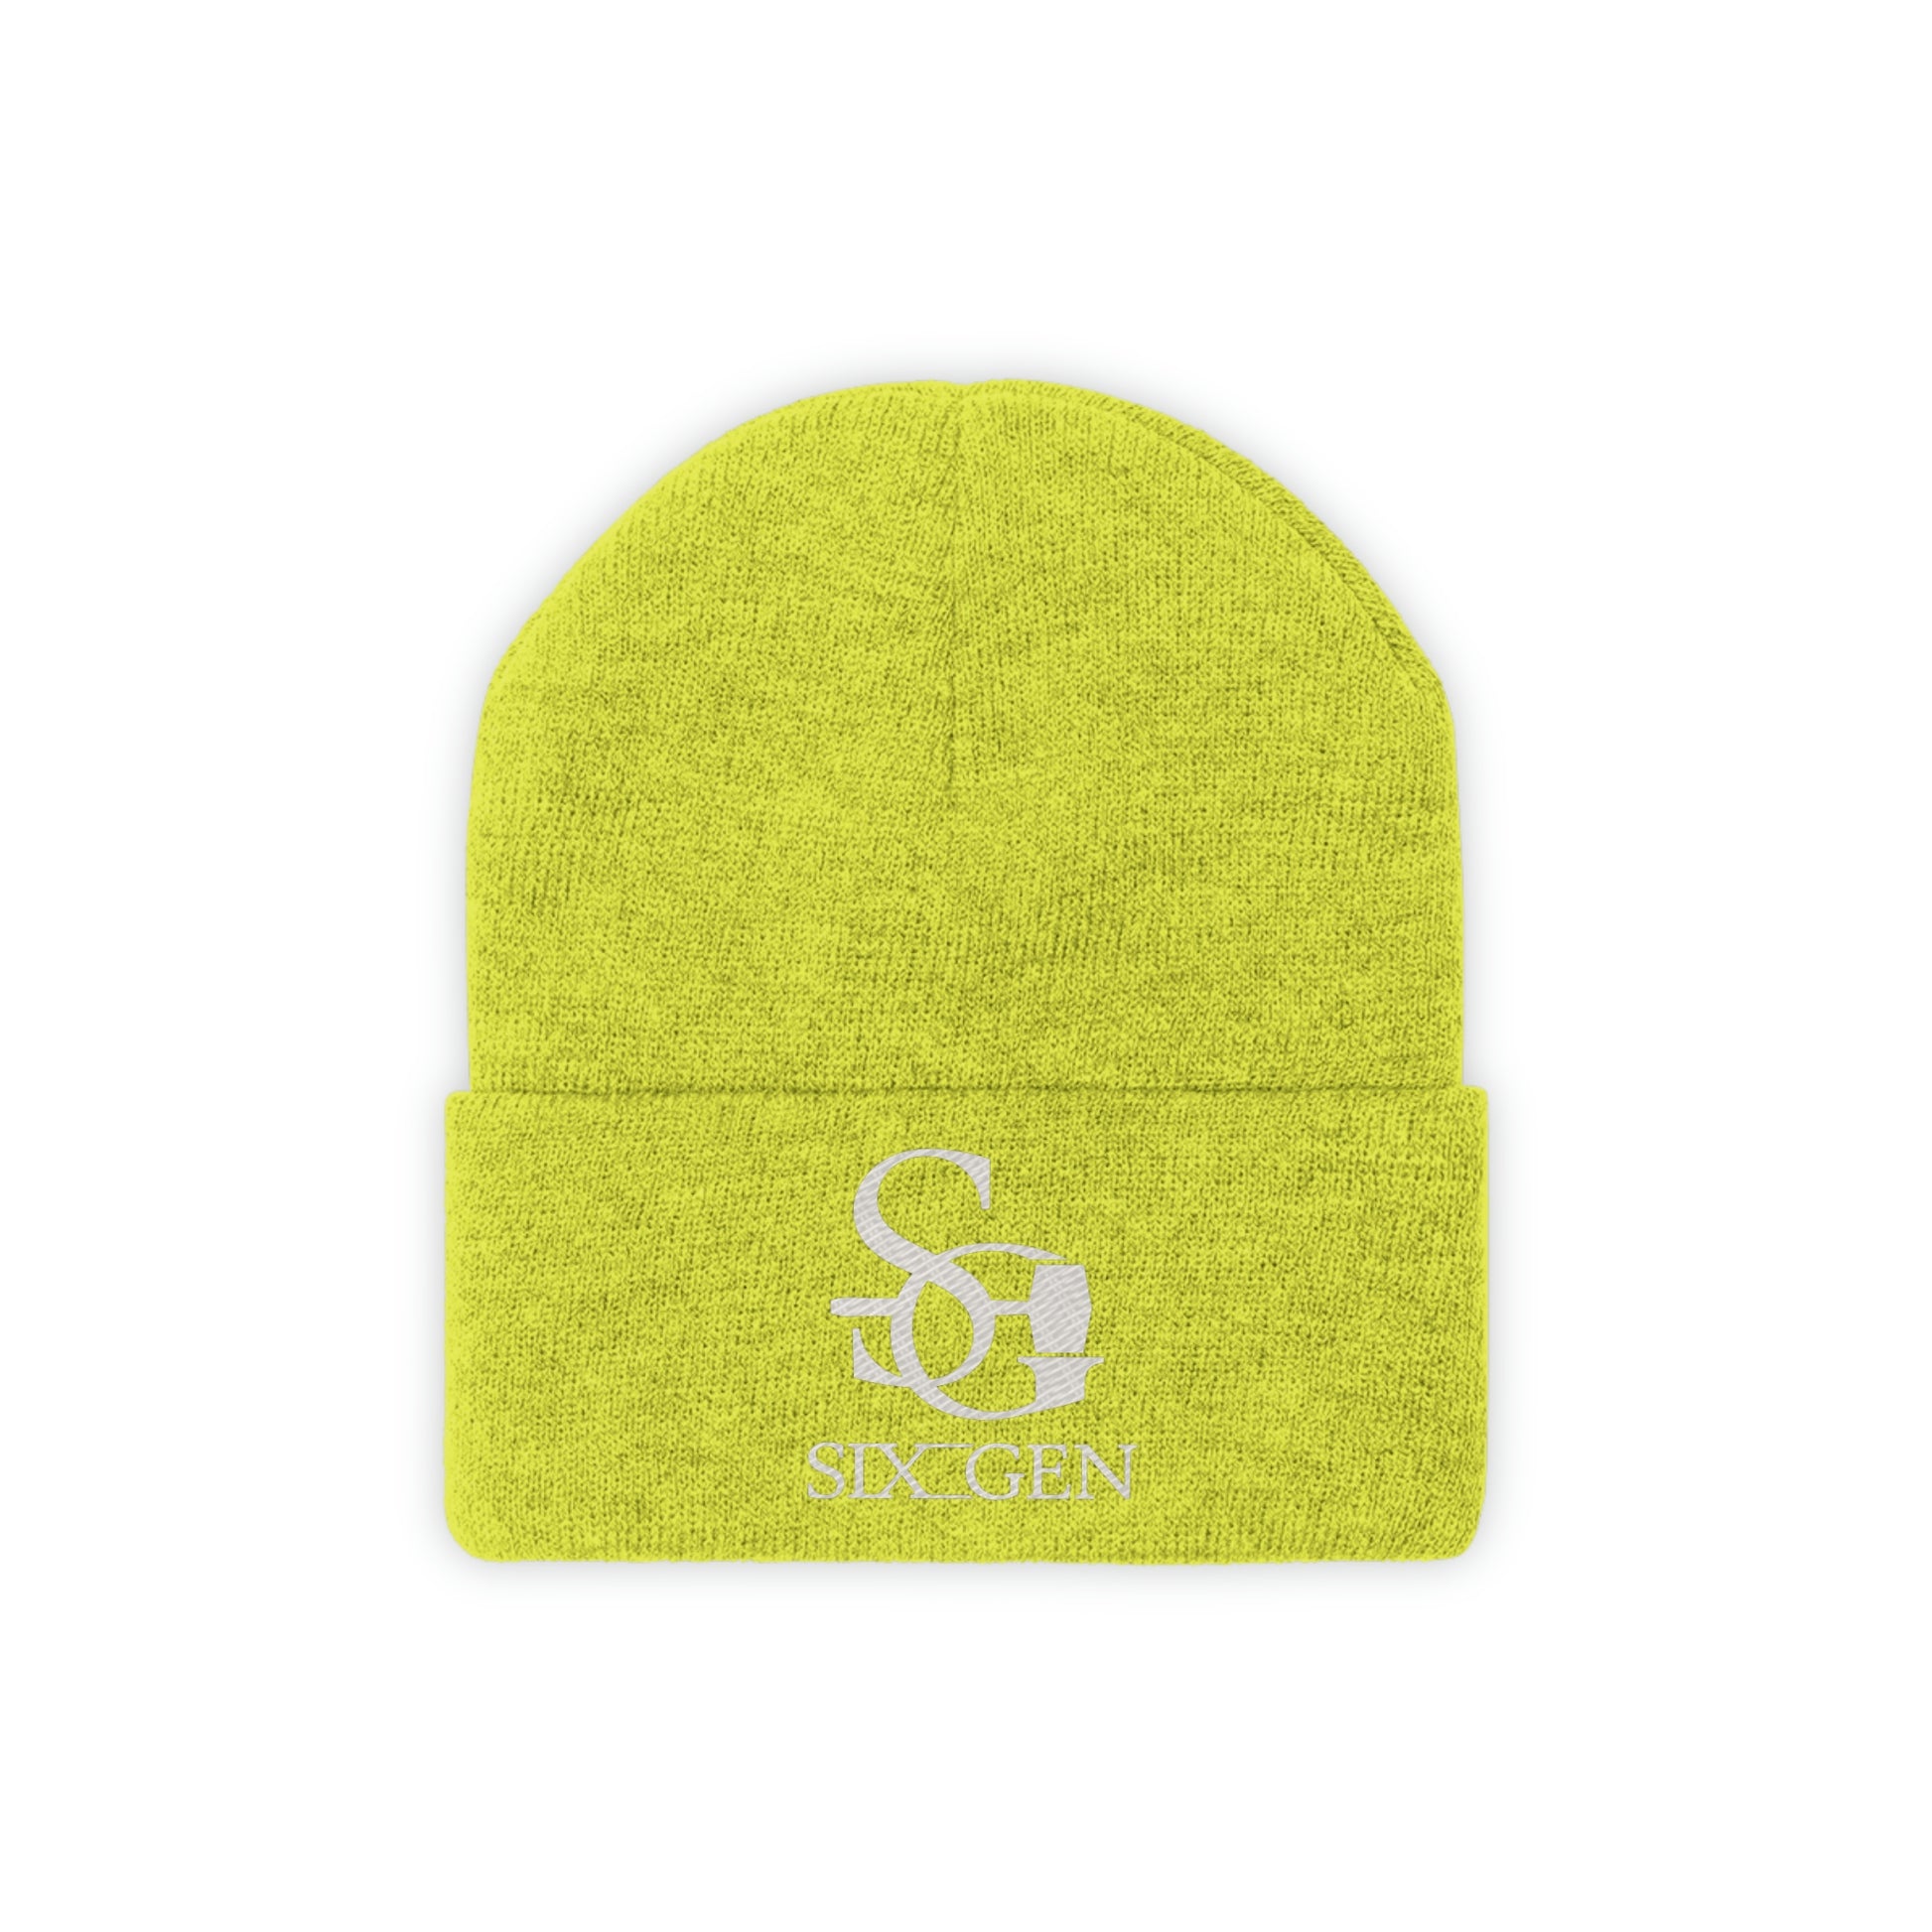 Six-Gen logo knitted hat